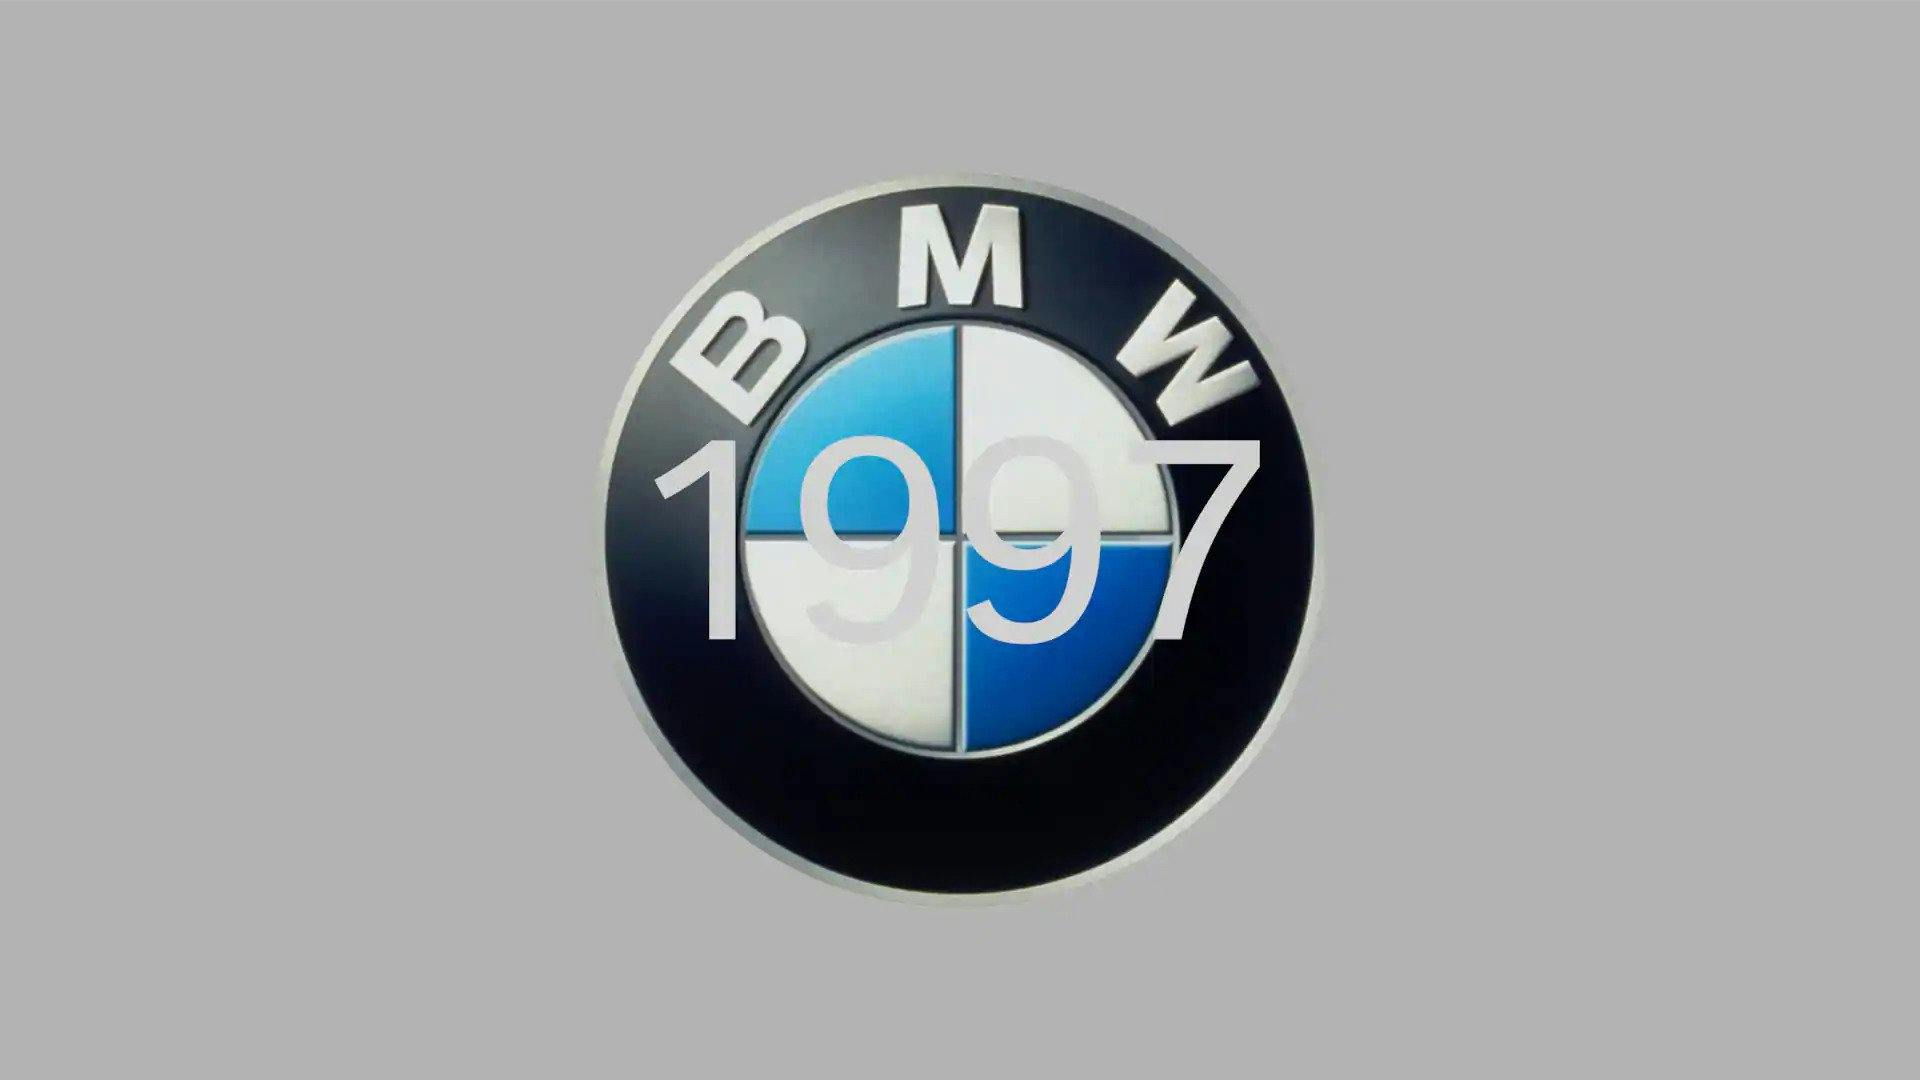 Diseño del logotipo de BMW 1997